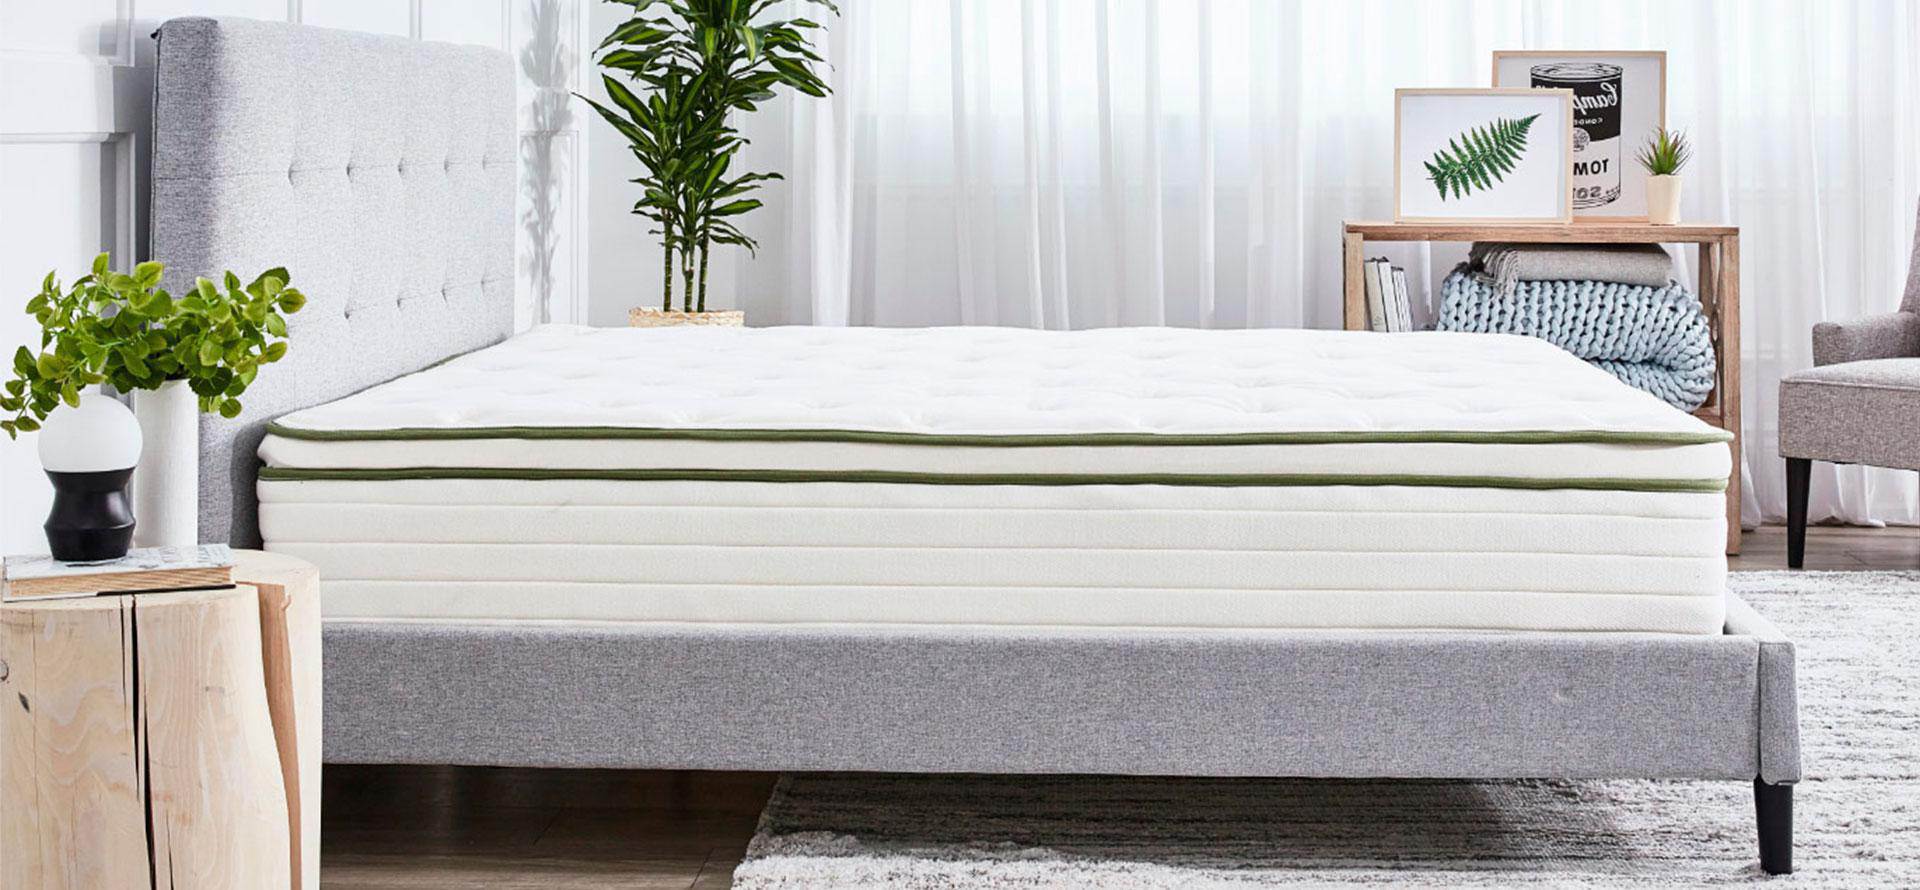 Beautiful full size mattress.